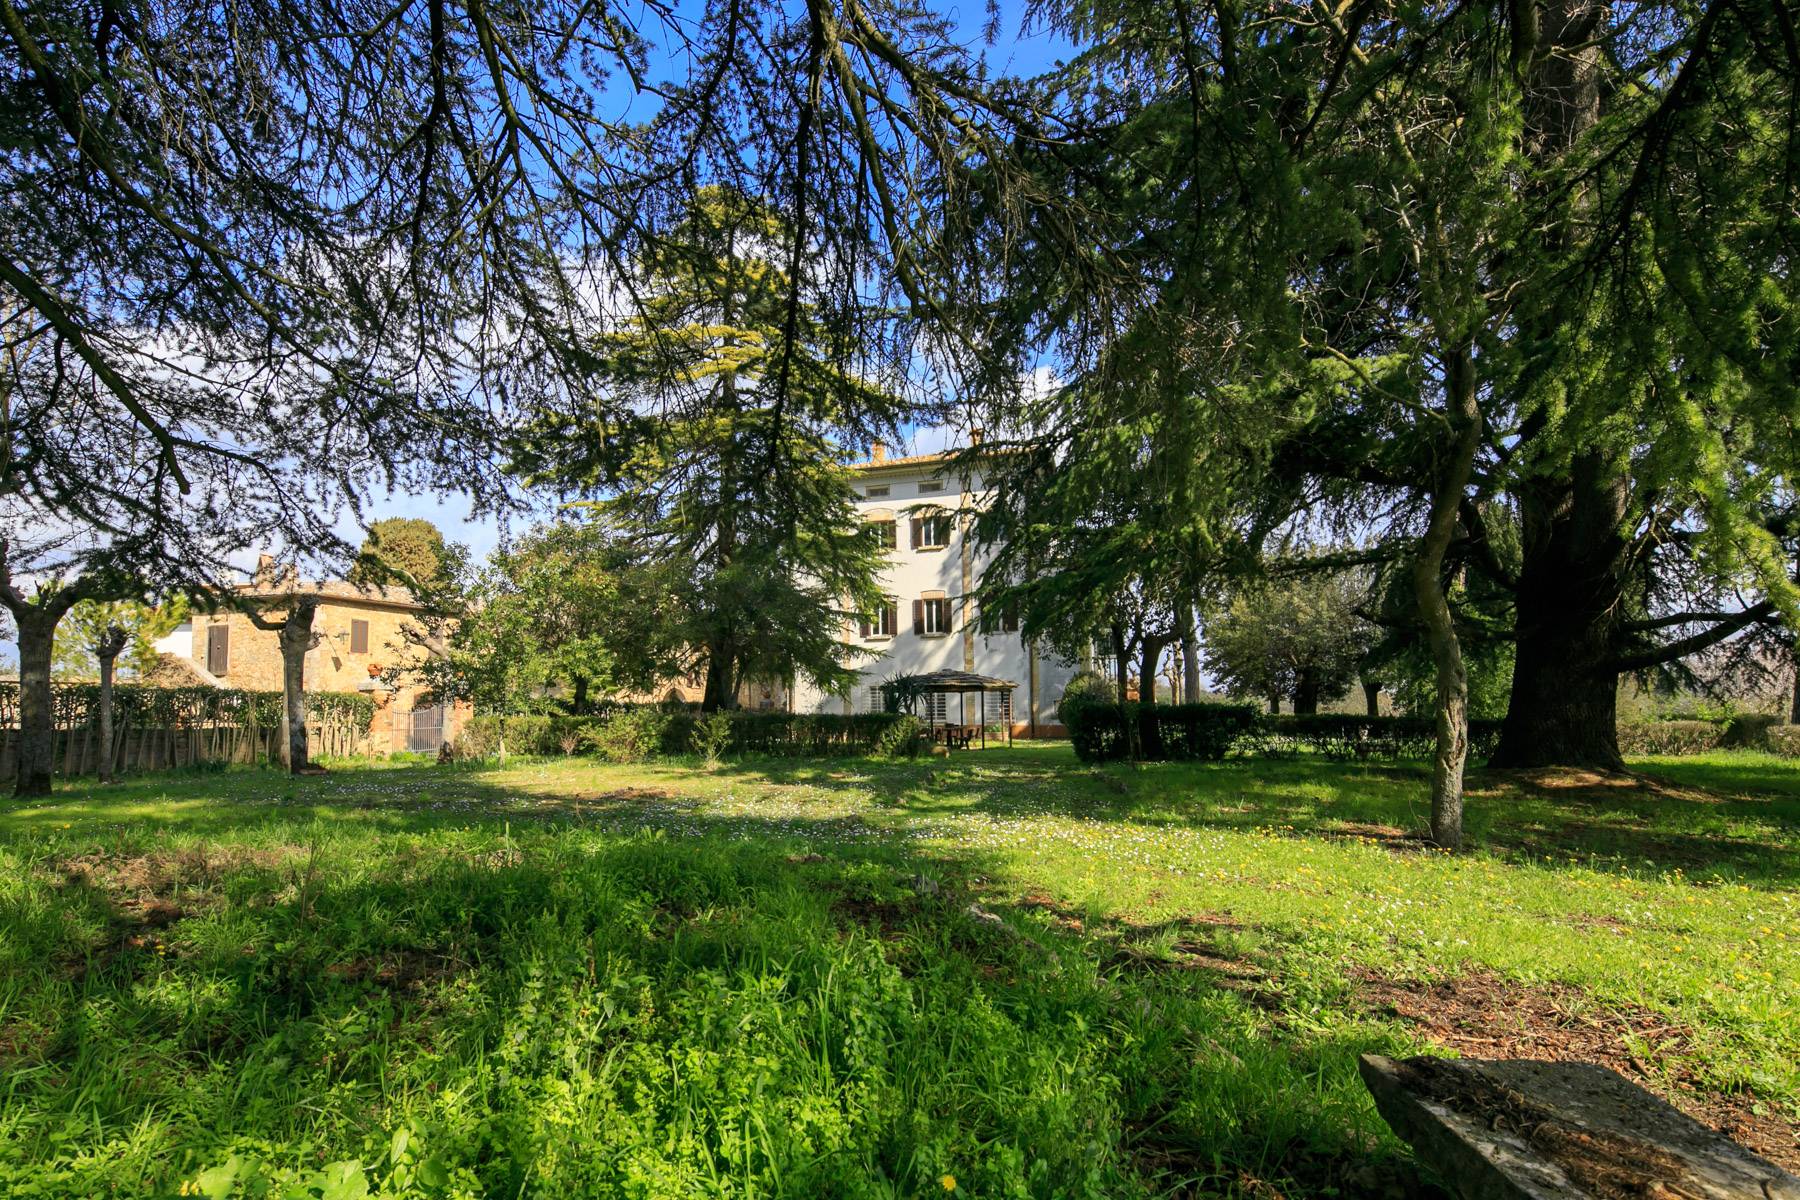 Villa in Vendita a Montepulciano: 5 locali, 2400 mq - Foto 27